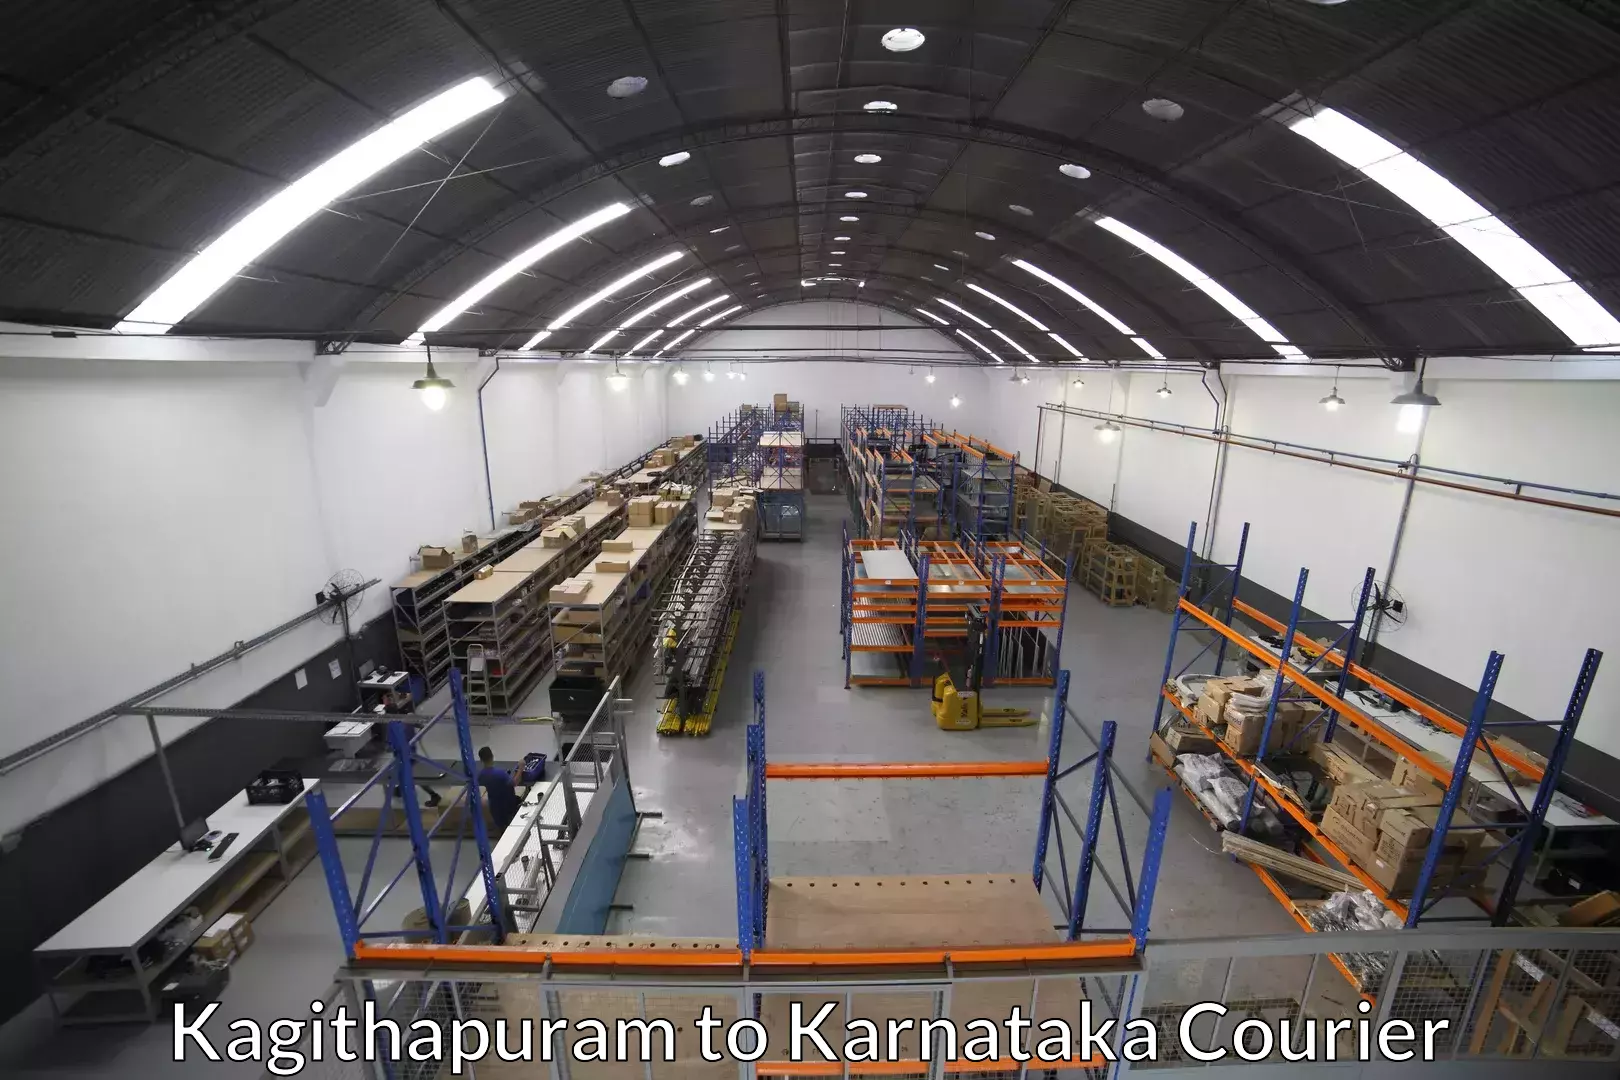 Furniture transport service Kagithapuram to Kanjarakatte